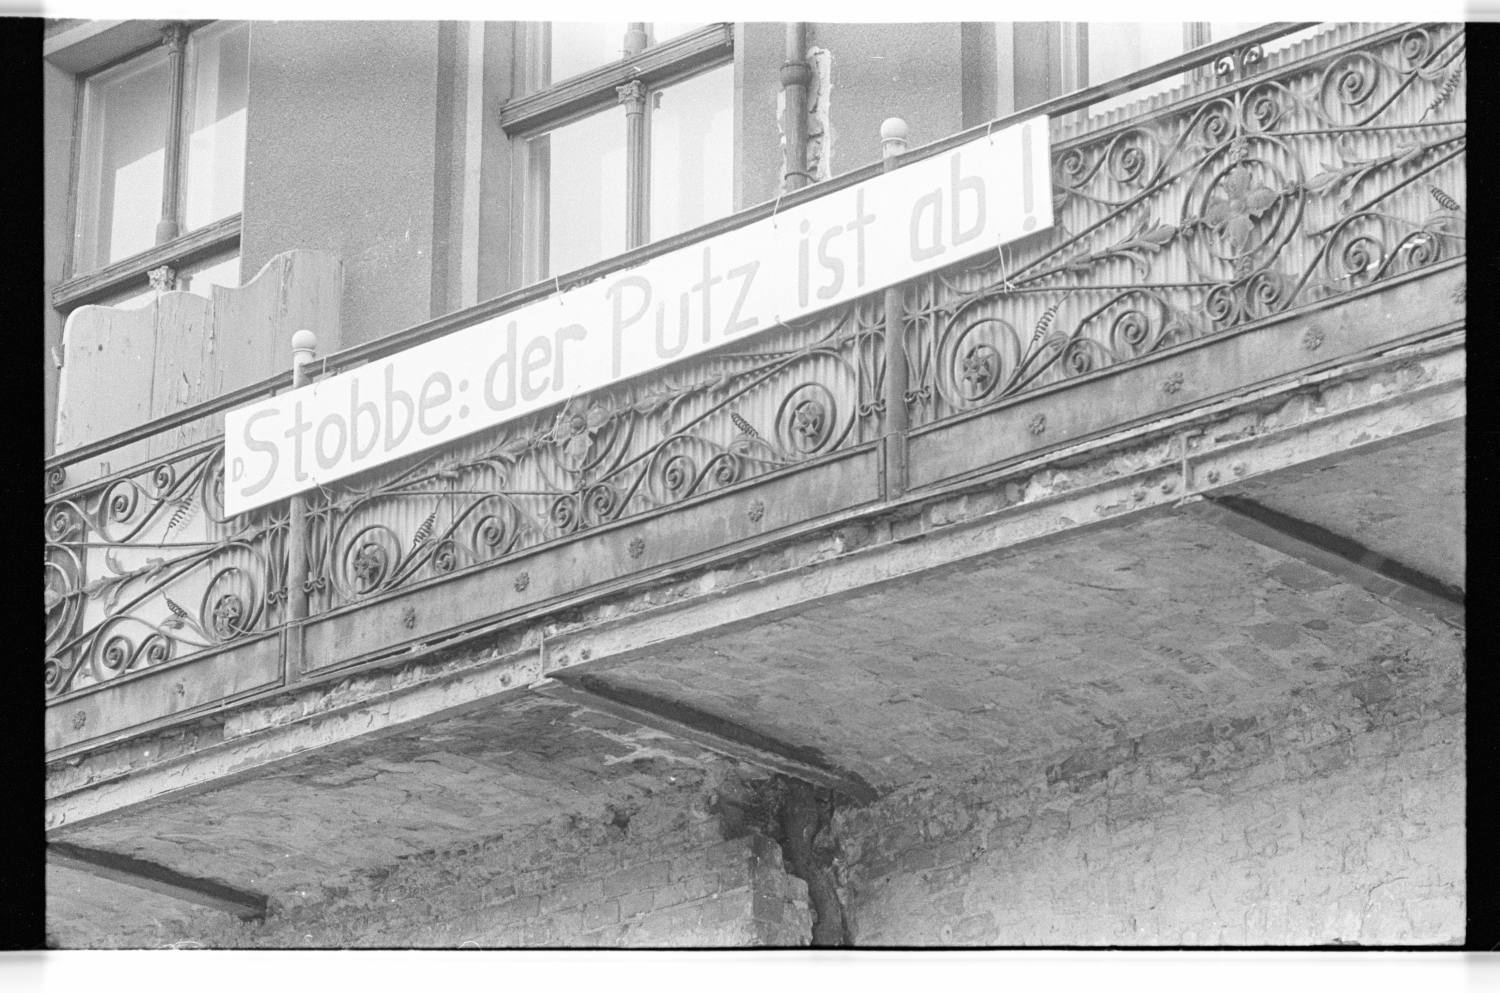 Kleinbildnegative: Transparent „Stobbe: der Putz ist ab!“, 1979 (Museen Tempelhof-Schöneberg/Jürgen Henschel RR-F)